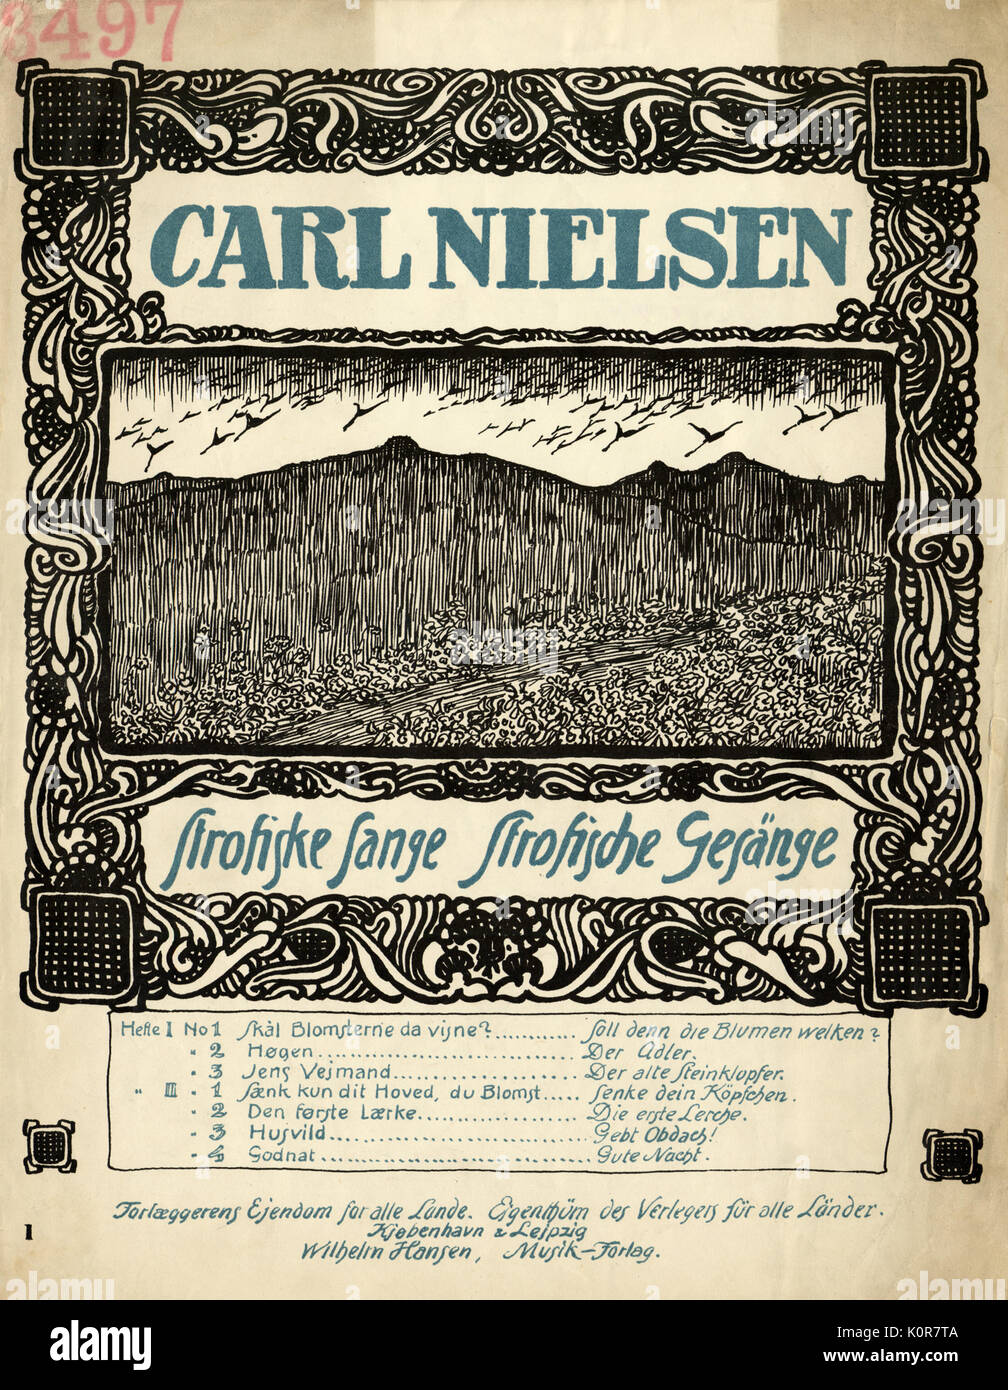 Nielsen, Carl - Score couvert d'Strofiske Sange Strofische Gesange. Publié le Kiebenhavn & Leipzig par Wilhelm Hansen. Compositeur danois 9 Juin 1865 - 3 octobre 1931 Banque D'Images